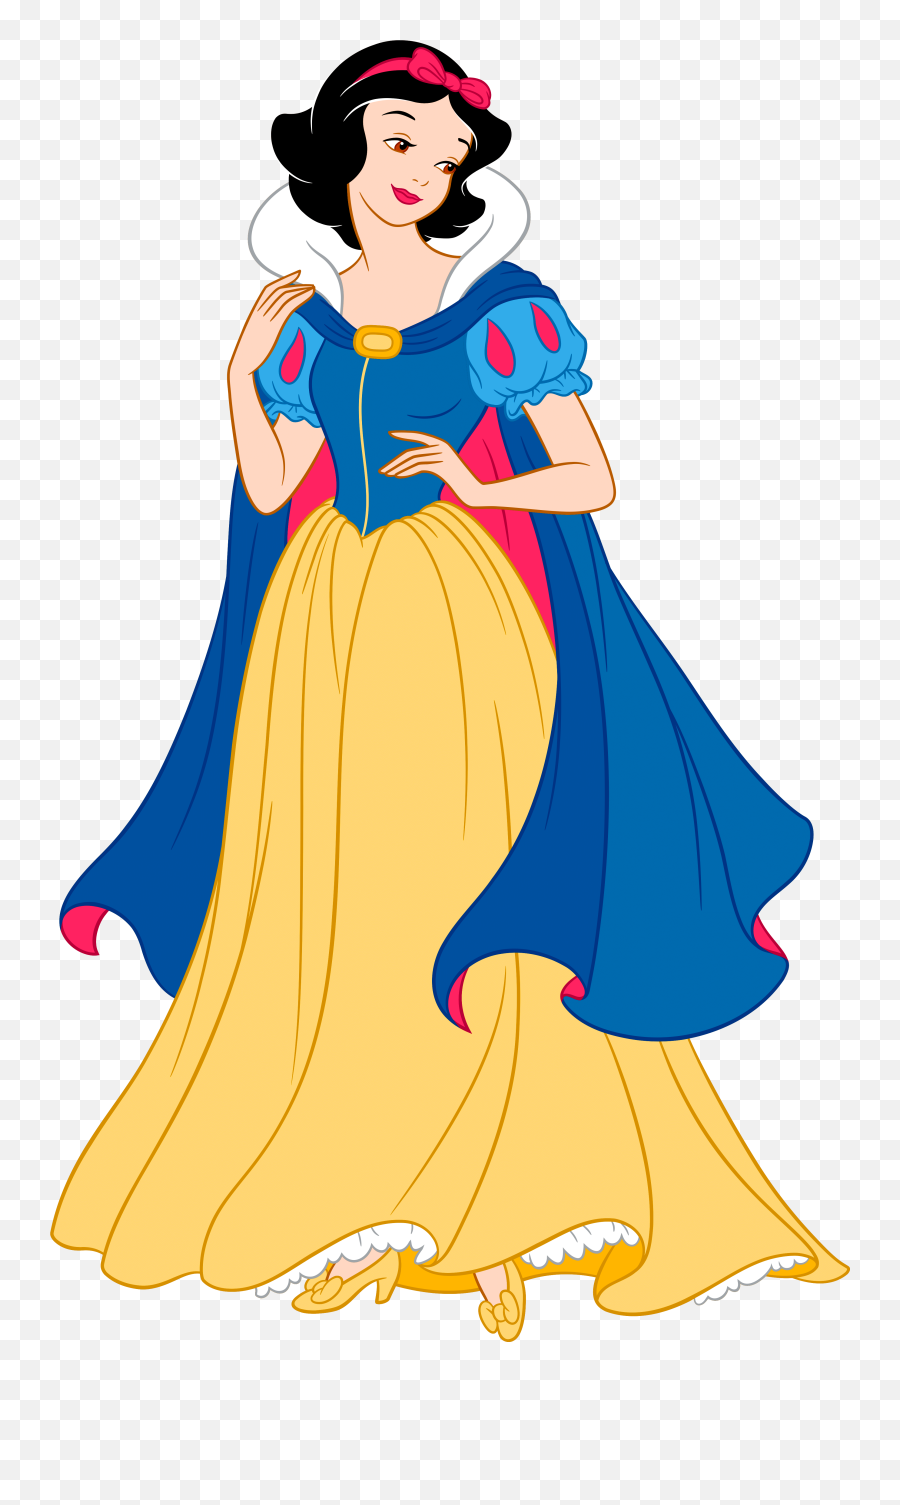 Cinderella Christmas Cliparts - Disney Princess Cinderella Free Clip Art Cinderella Emoji,Disney Princess Emojis